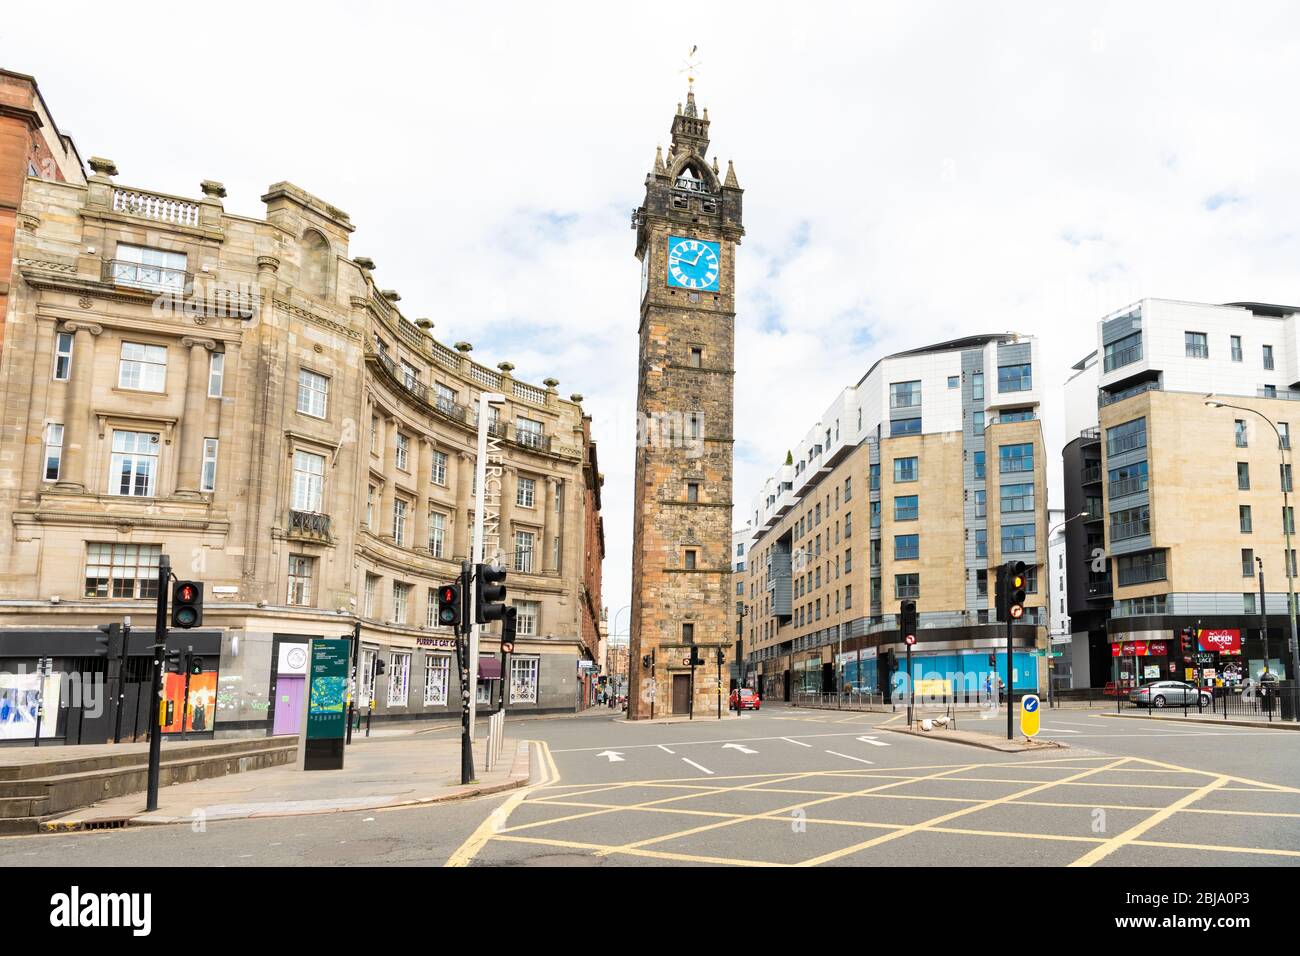 Glasgow Cross dans la ville marchande - rues vides pendant le verrouillage du coronavirus (photo prise à 11:46 en semaine), Glasgow, Ecosse, Royaume-Uni Banque D'Images